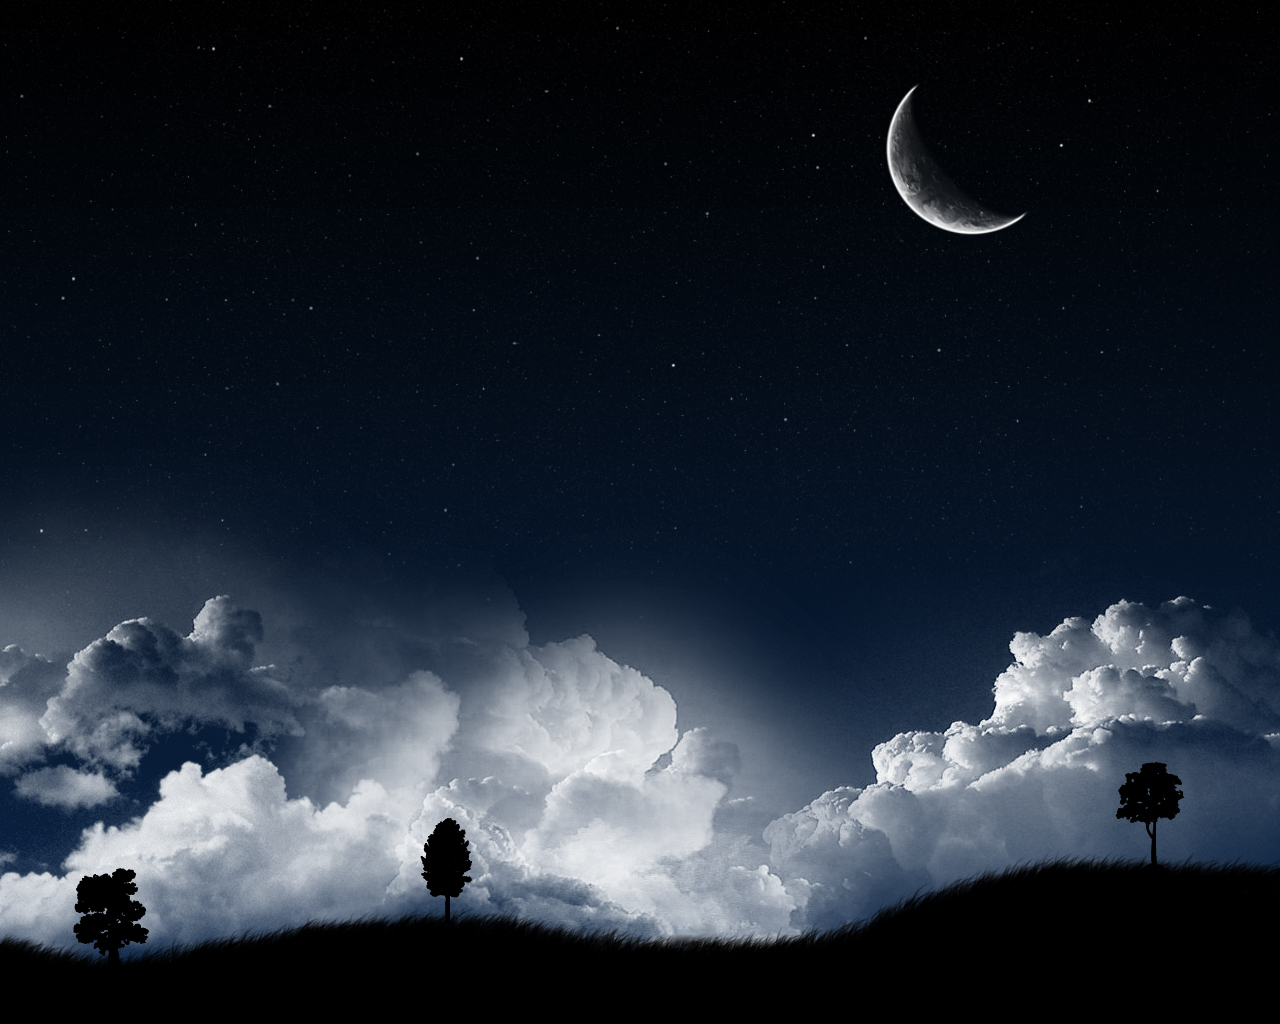 General 1280x1024 landscape night Moon clouds stars digital art sky trees